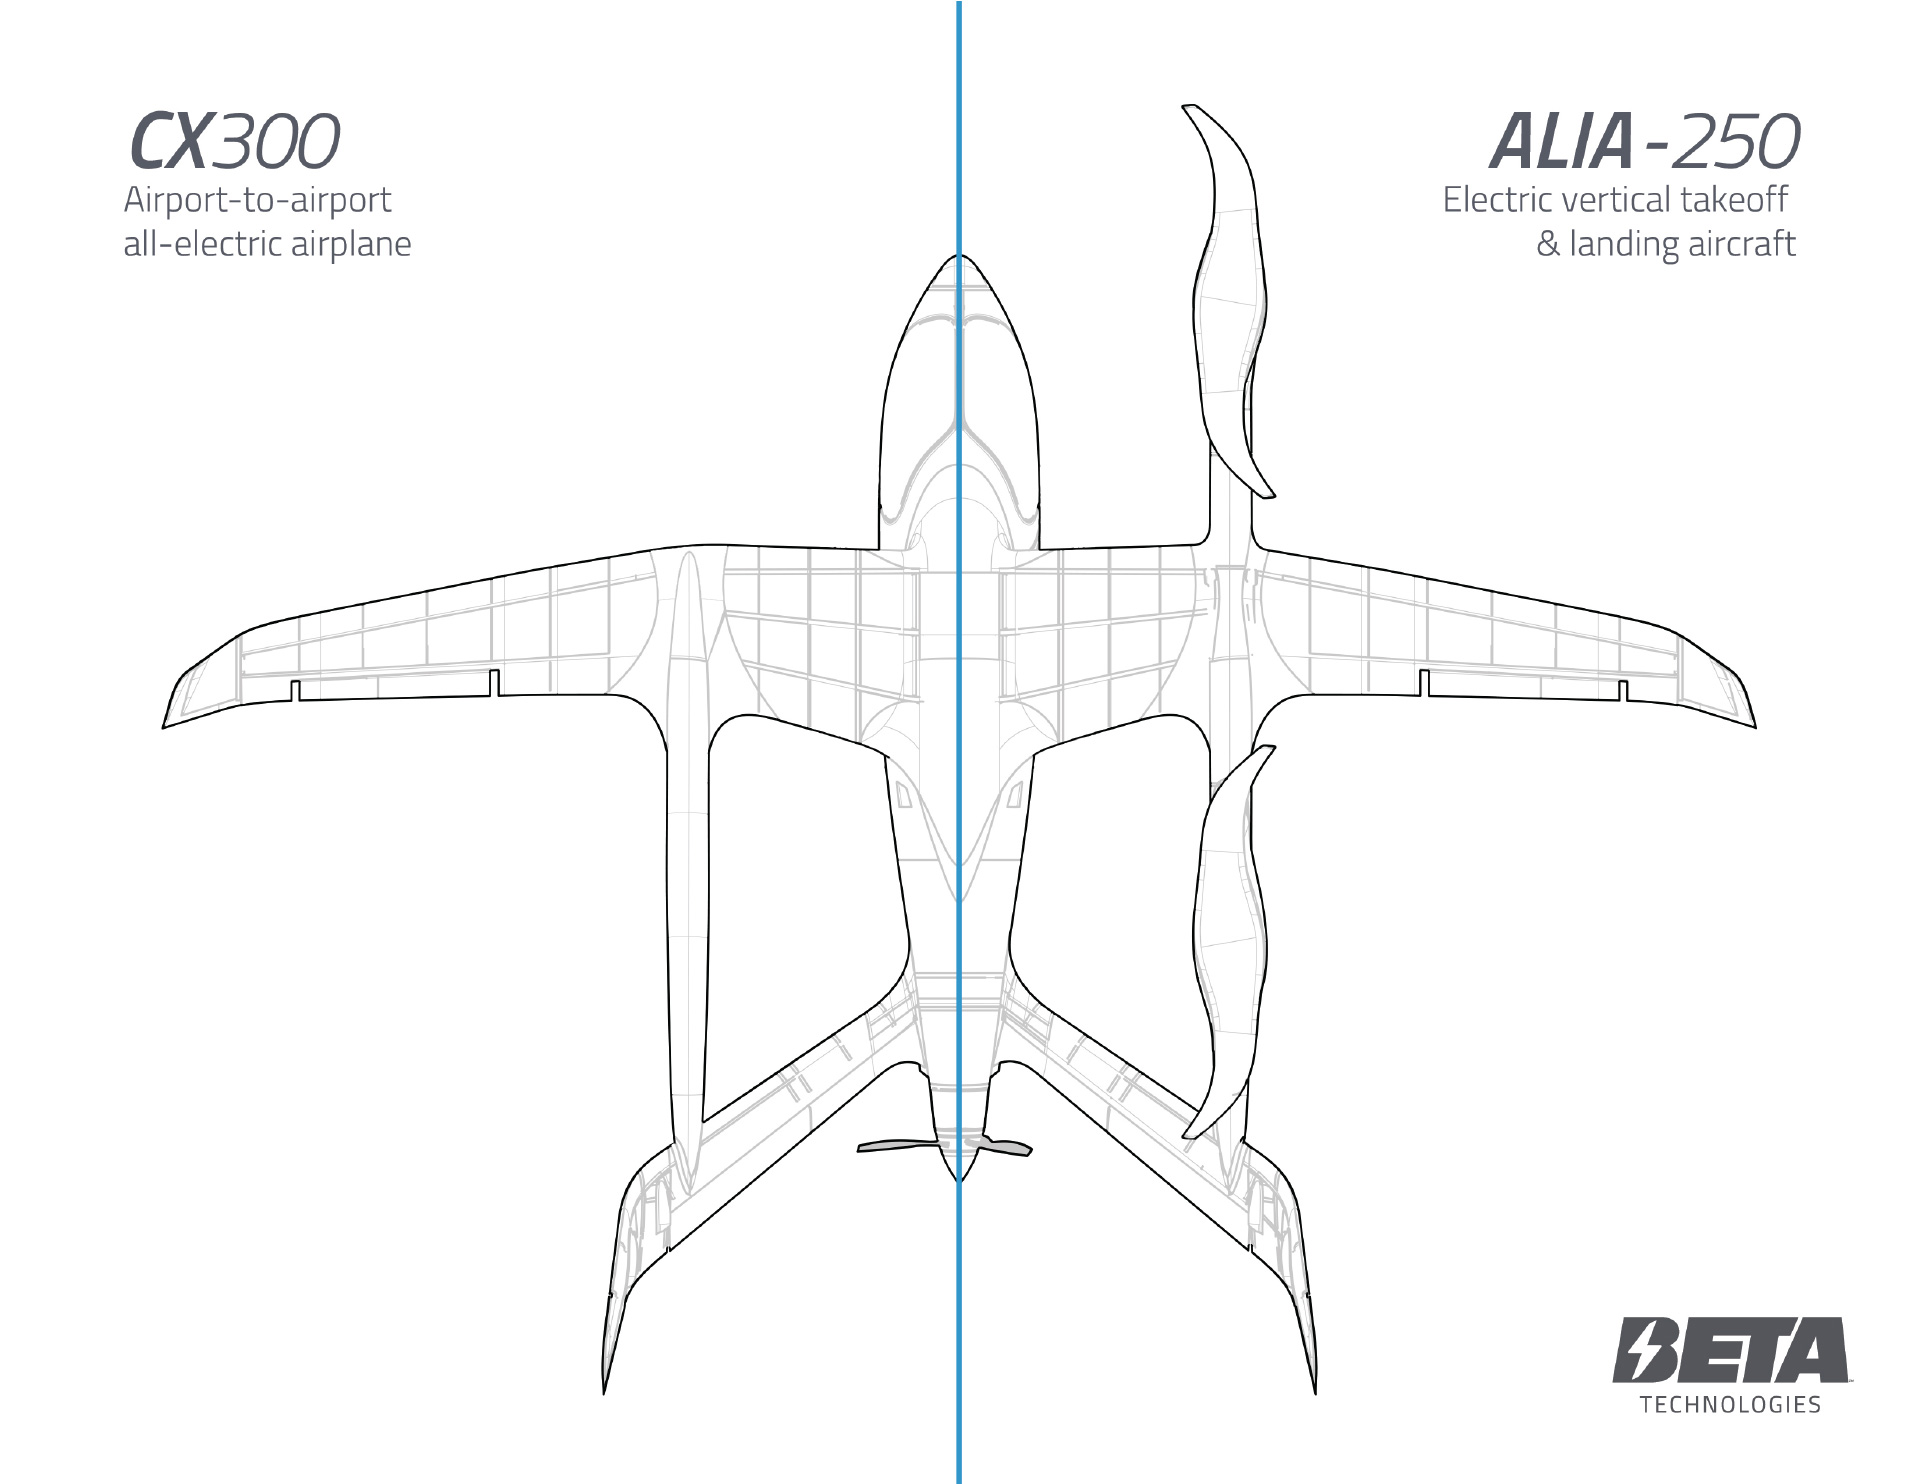 ALIA CTOL モデルと VTOL モデルの違いを示す図